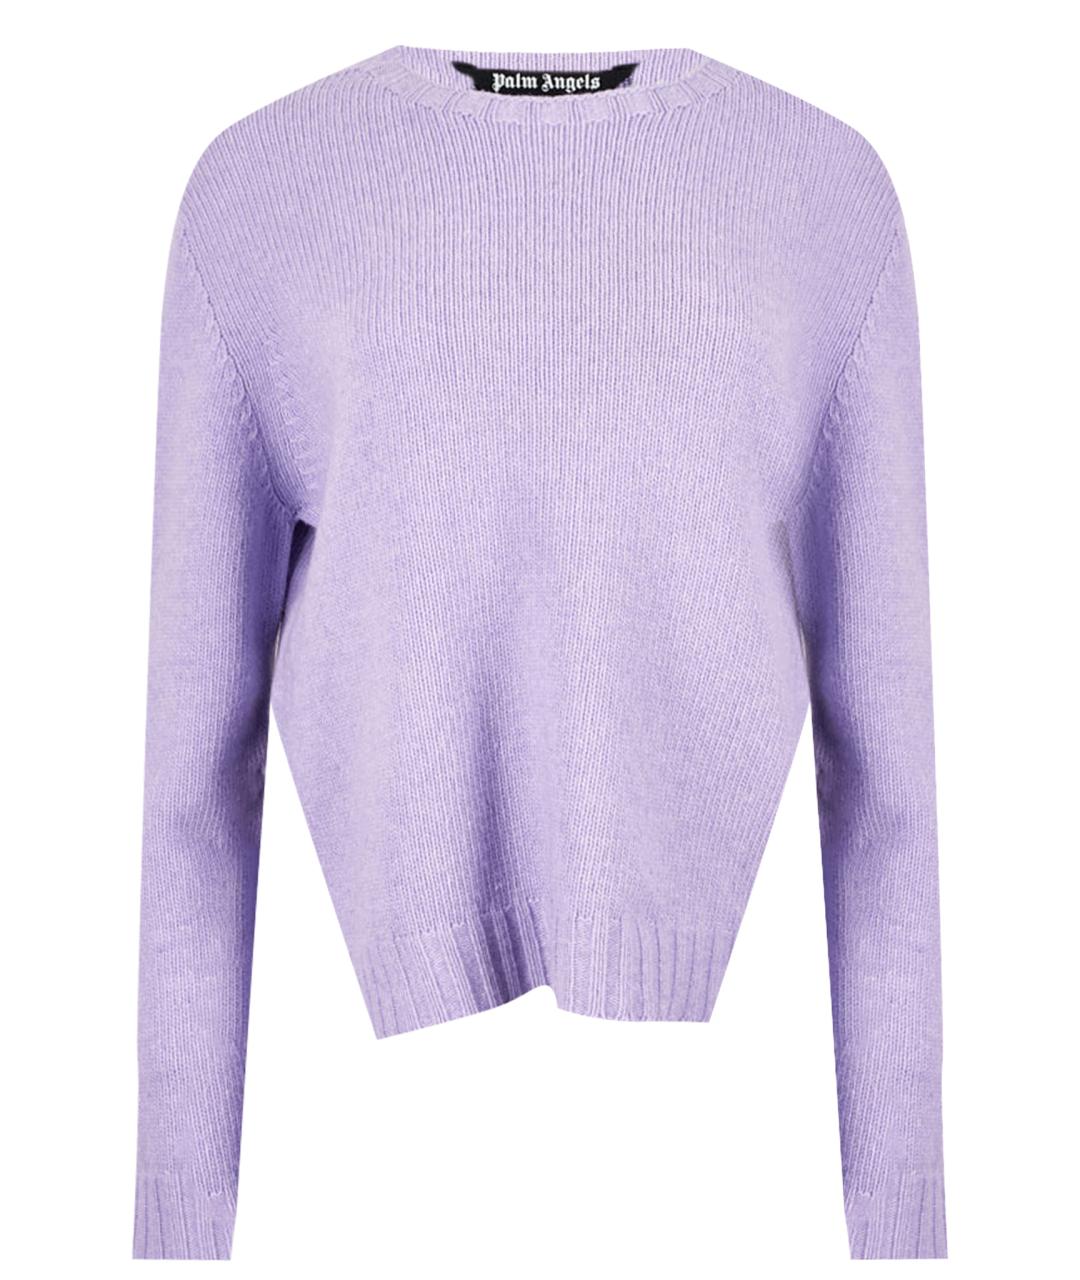 PALM ANGELS Фиолетовый шерстяной джемпер / свитер, фото 1